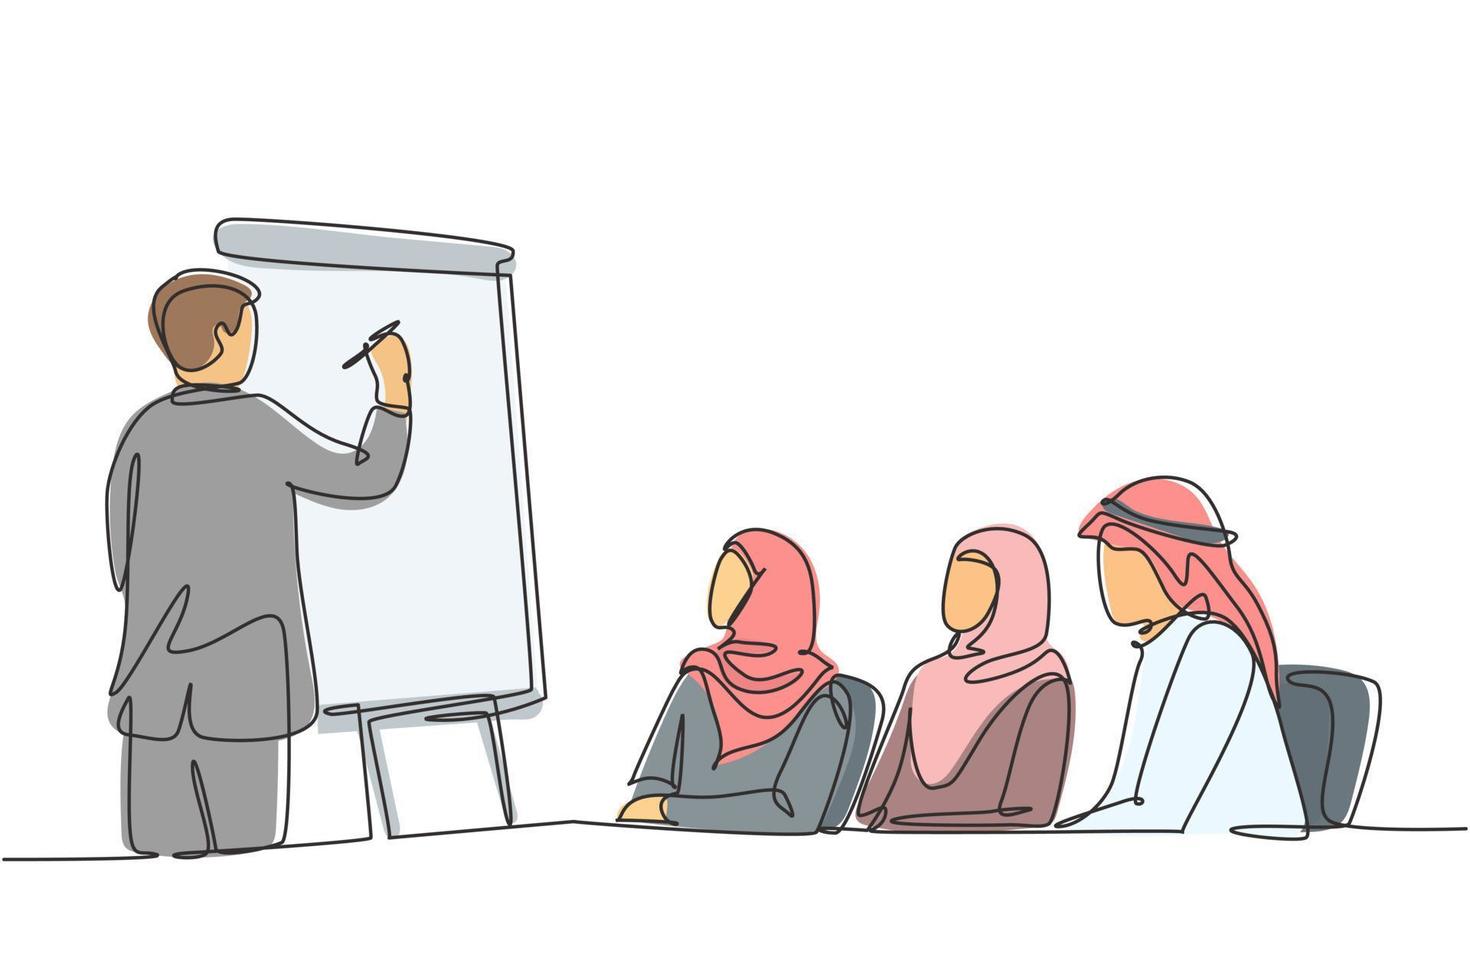 um único desenho de linha de jovem muçulmano feliz aprendendo estratégia de negócios com um consultor. pano da Arábia Saudita shmag, kandora, lenço na cabeça, thobe, ghutra. ilustração em vetor desenho desenho em linha contínua